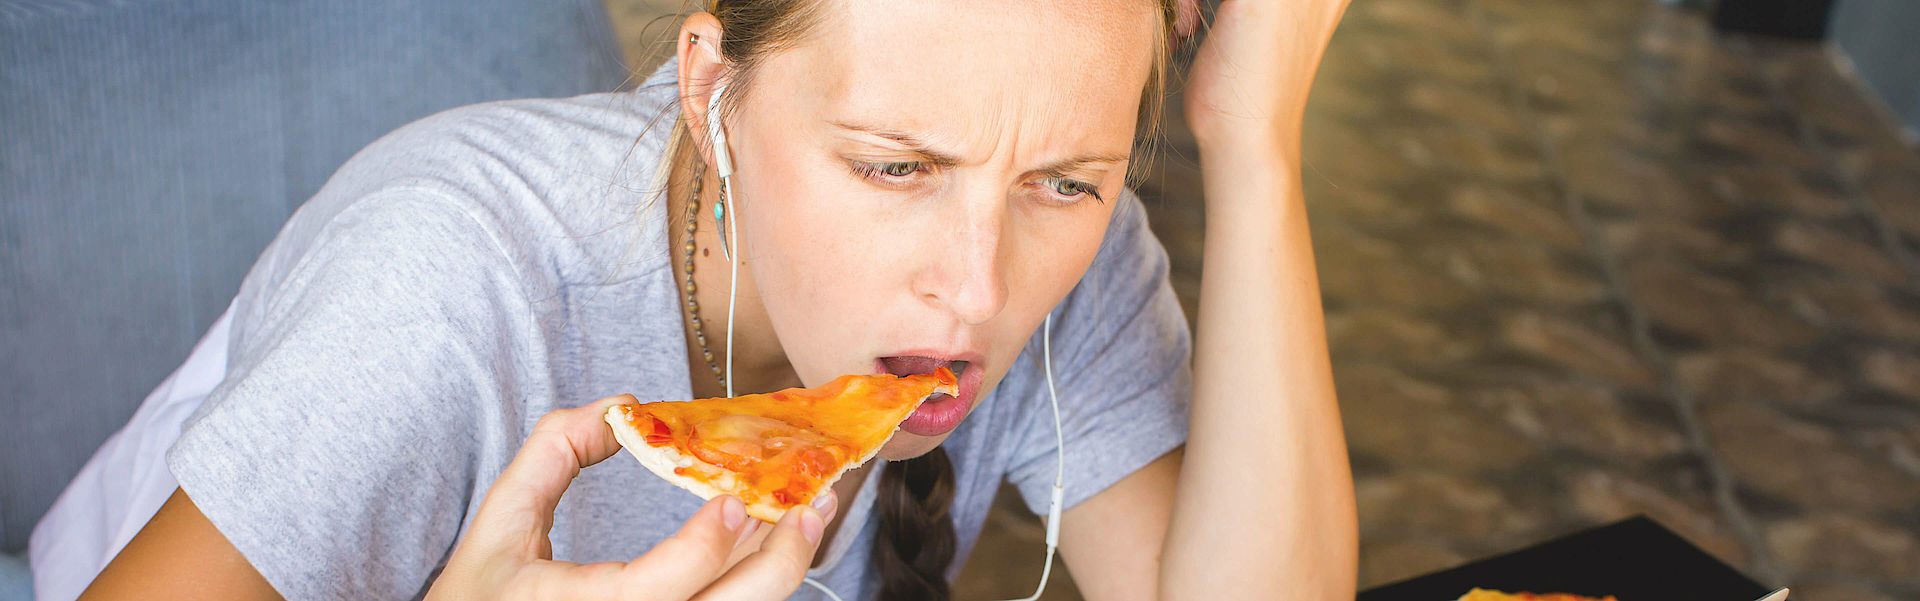 Eine Frau sitzt vor einem Laptop. Sie schaut auf den Bildschirm und isst ein Stück Pizza. Um sie herum liegt einiges an Fast Food und ungesundem Essen.